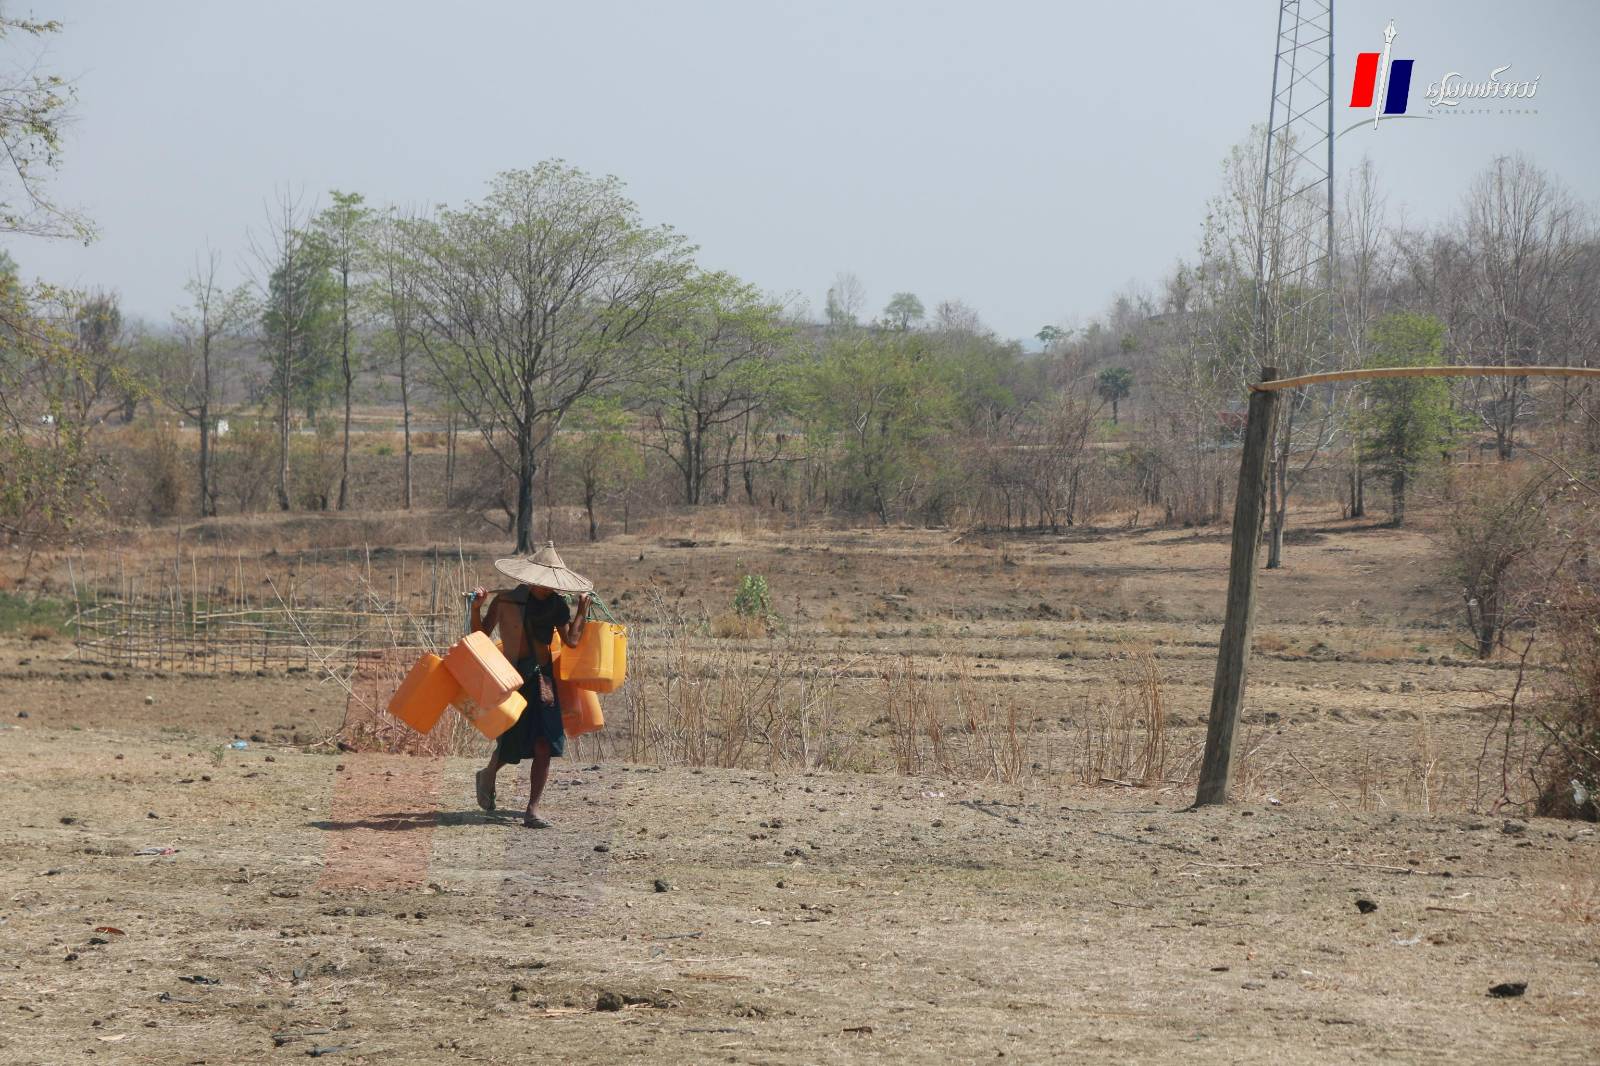 ပန်းတောင်းမြို့နယ် ကျေးရွာအချို့မှာ ရေရှားပါးမှုနဲ့ စတင်ကြုံတွေ့လာရ